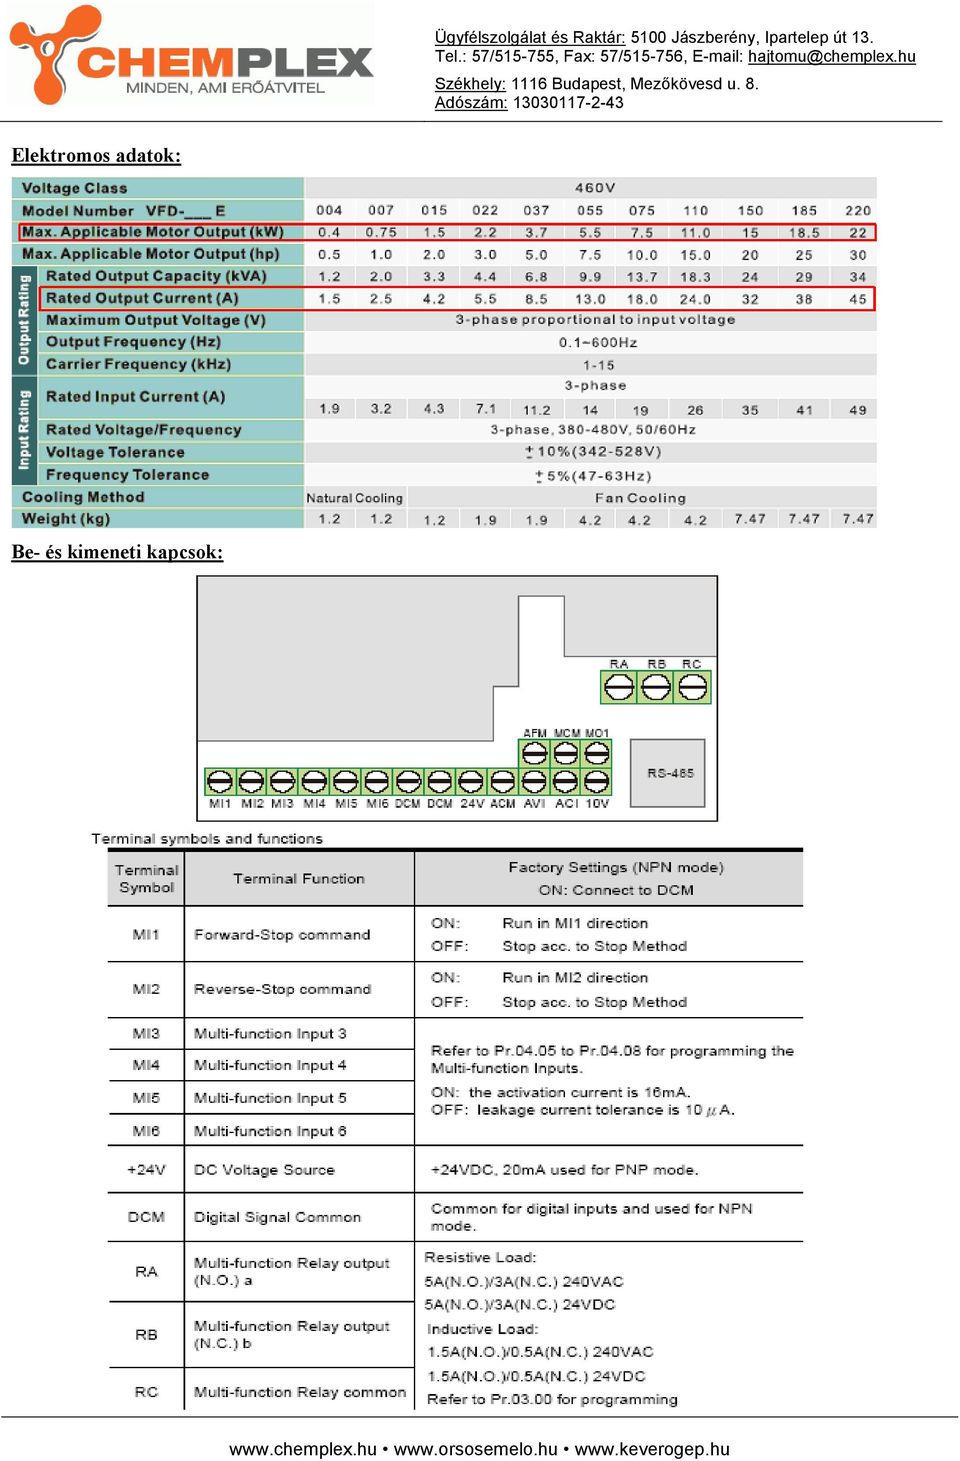 DELTA VFD-E frekvenciaváltó kezelési utasítás - PDF Free Download